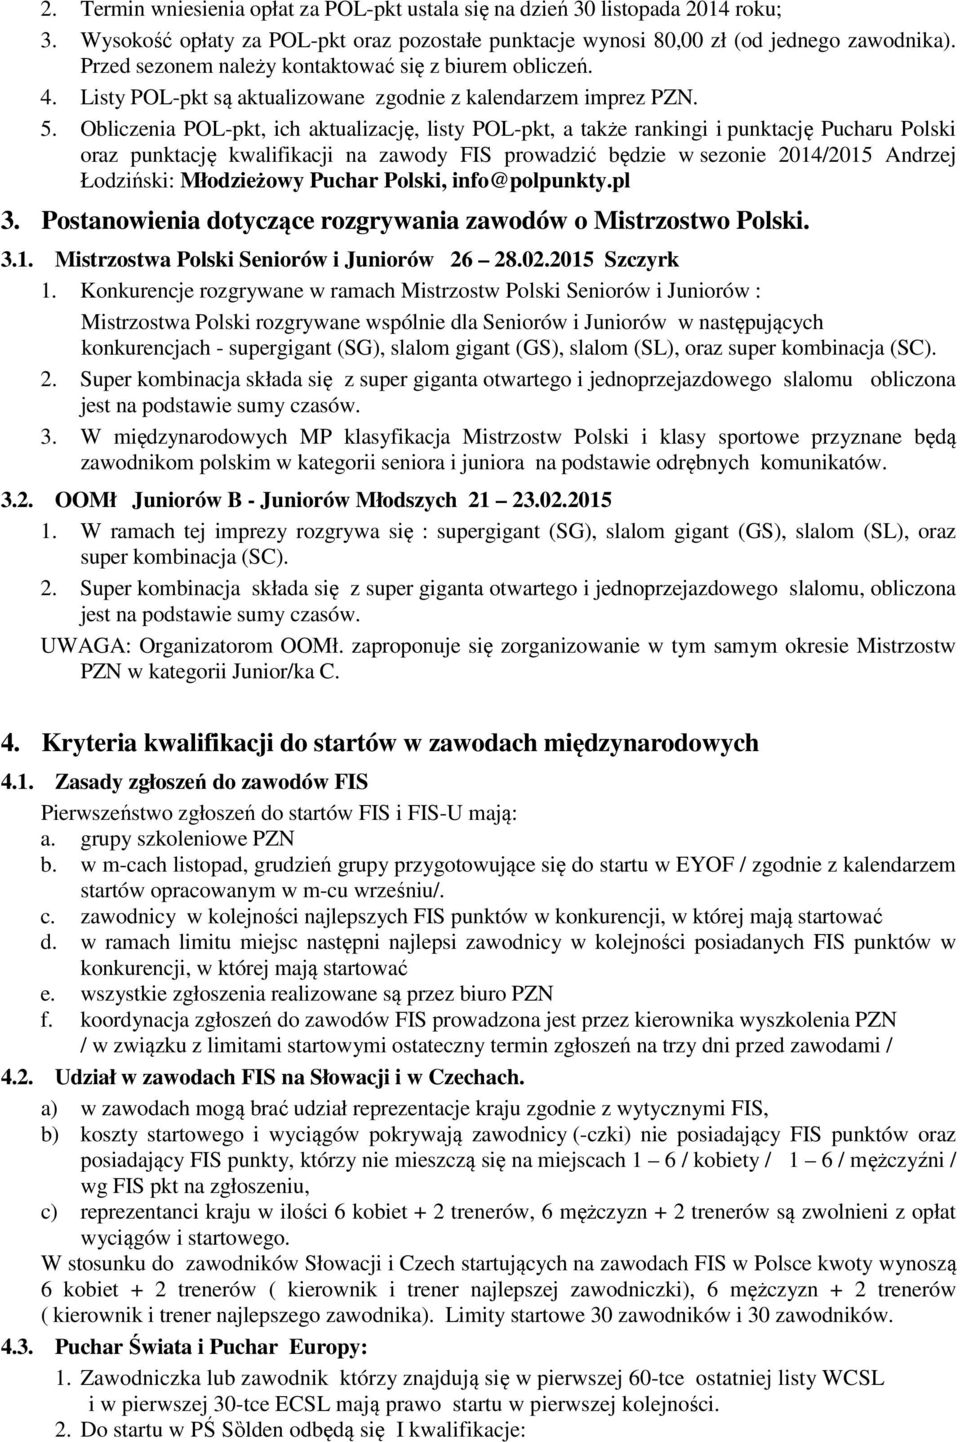 Obliczenia POL-pkt, ich aktualizację, listy POL-pkt, a także rankingi i punktację Pucharu Polski oraz punktację kwalifikacji na zawody FIS prowadzić będzie w sezonie 2014/2015 Andrzej Łodziński: